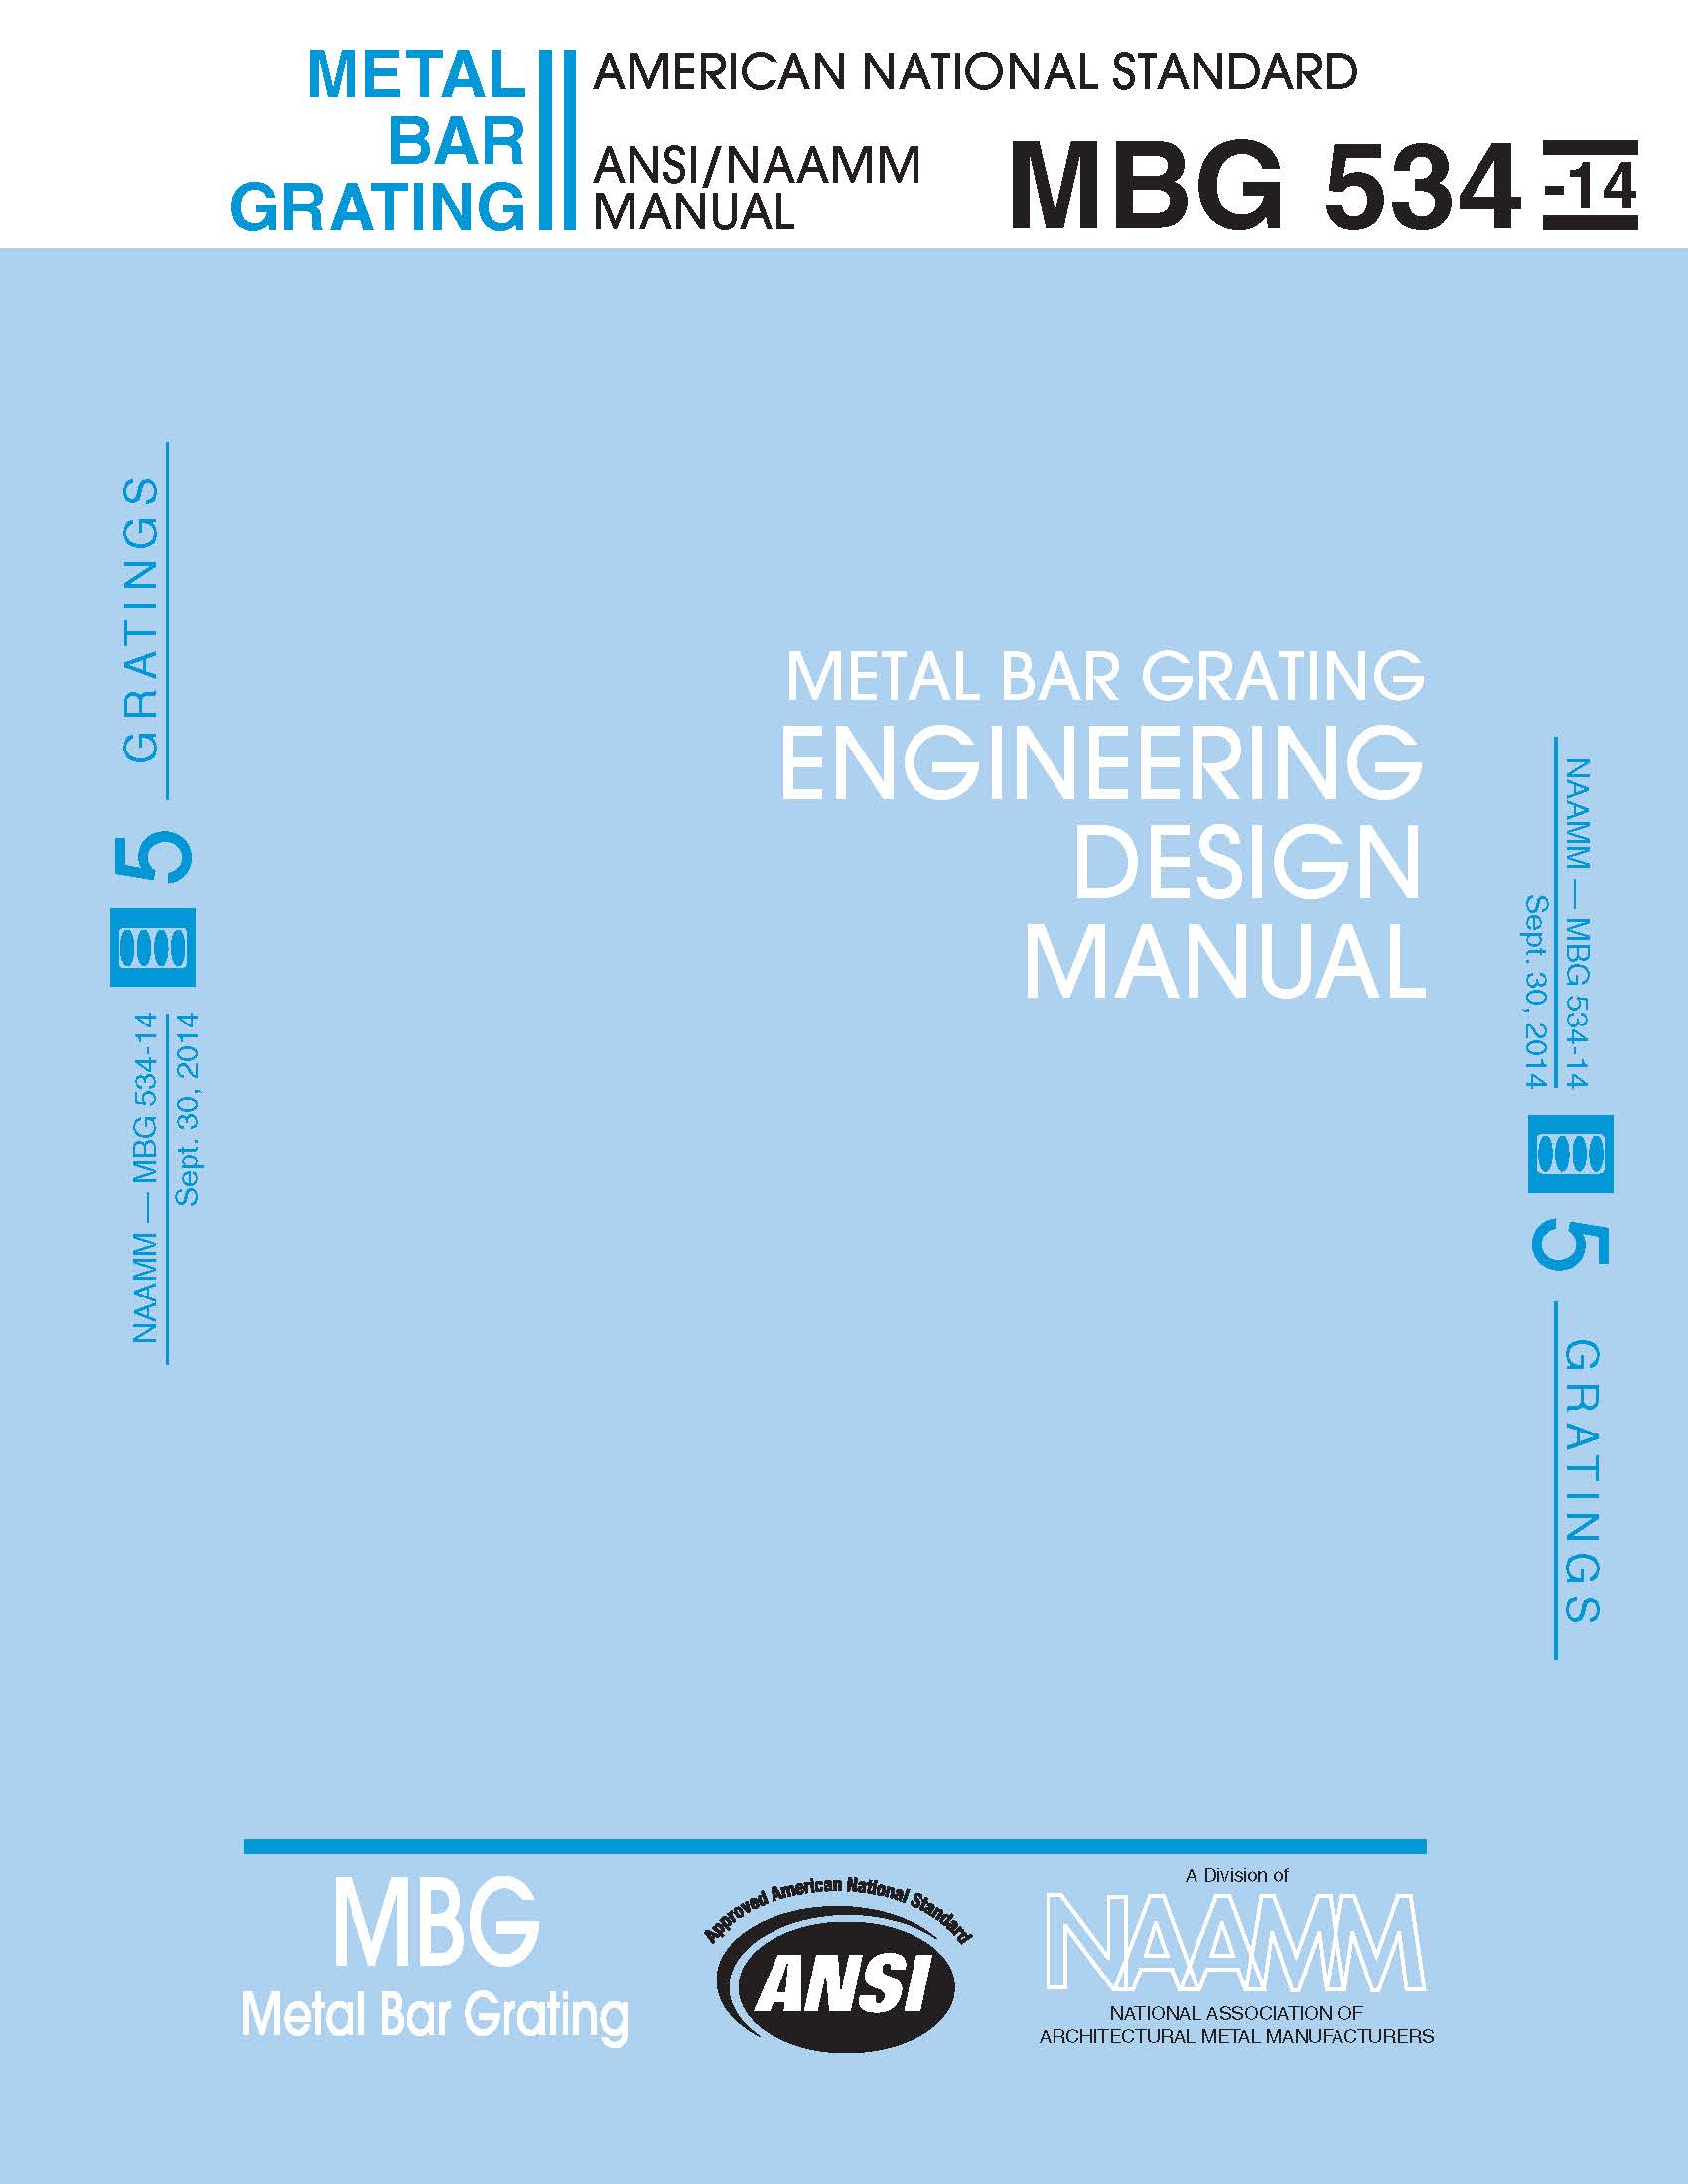 Metal Bar Grating Engineering Design Manual